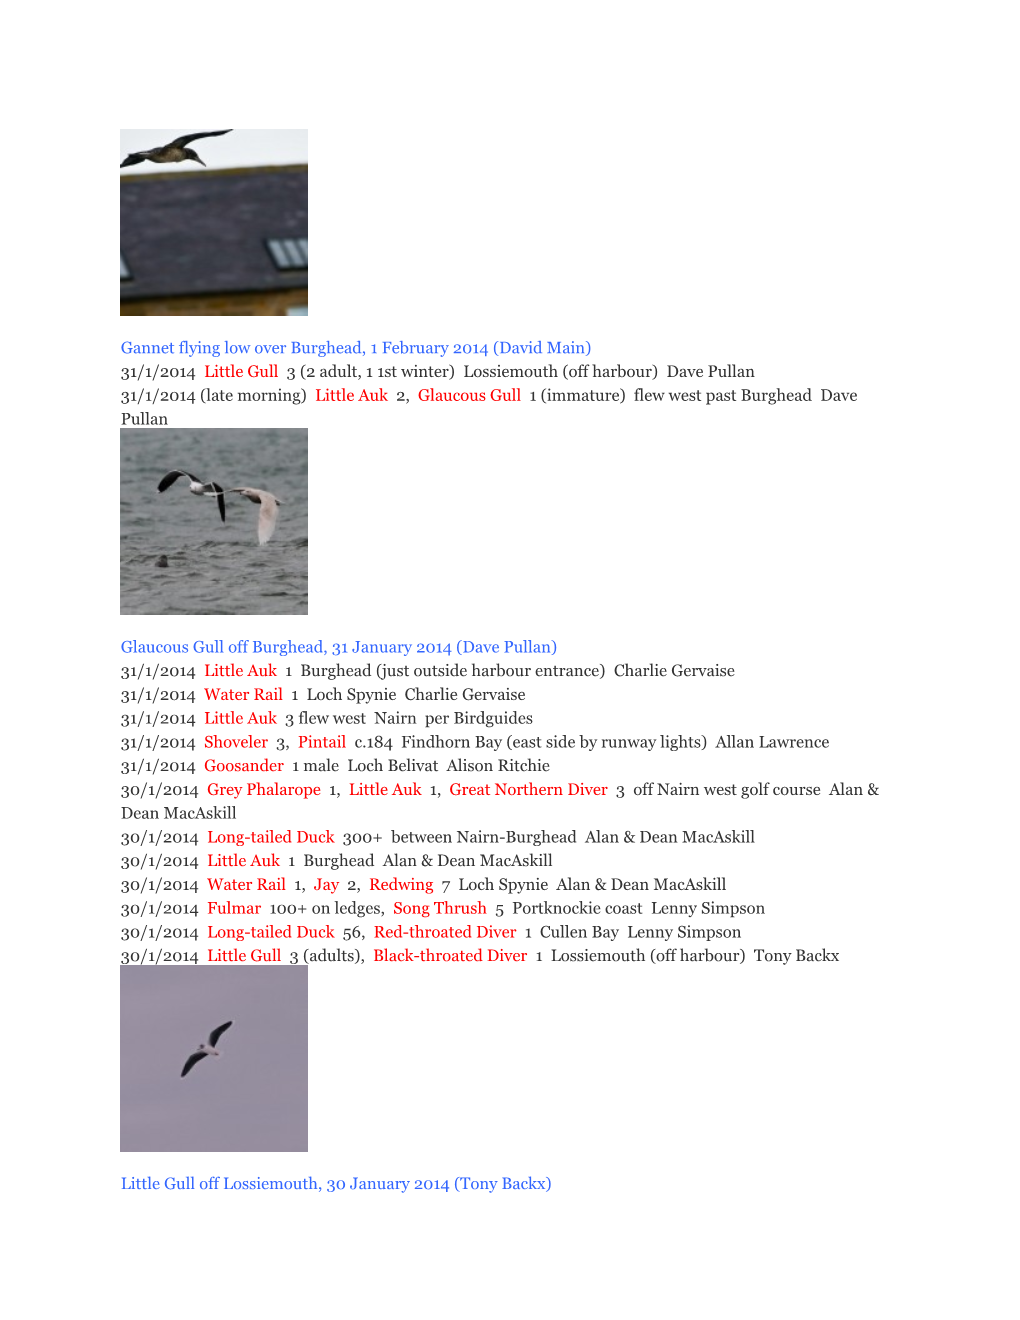 Gannet Flying Low Over Burghead, 1 February 2014 (David Main) 31/1/2014Little Gull 3 (2